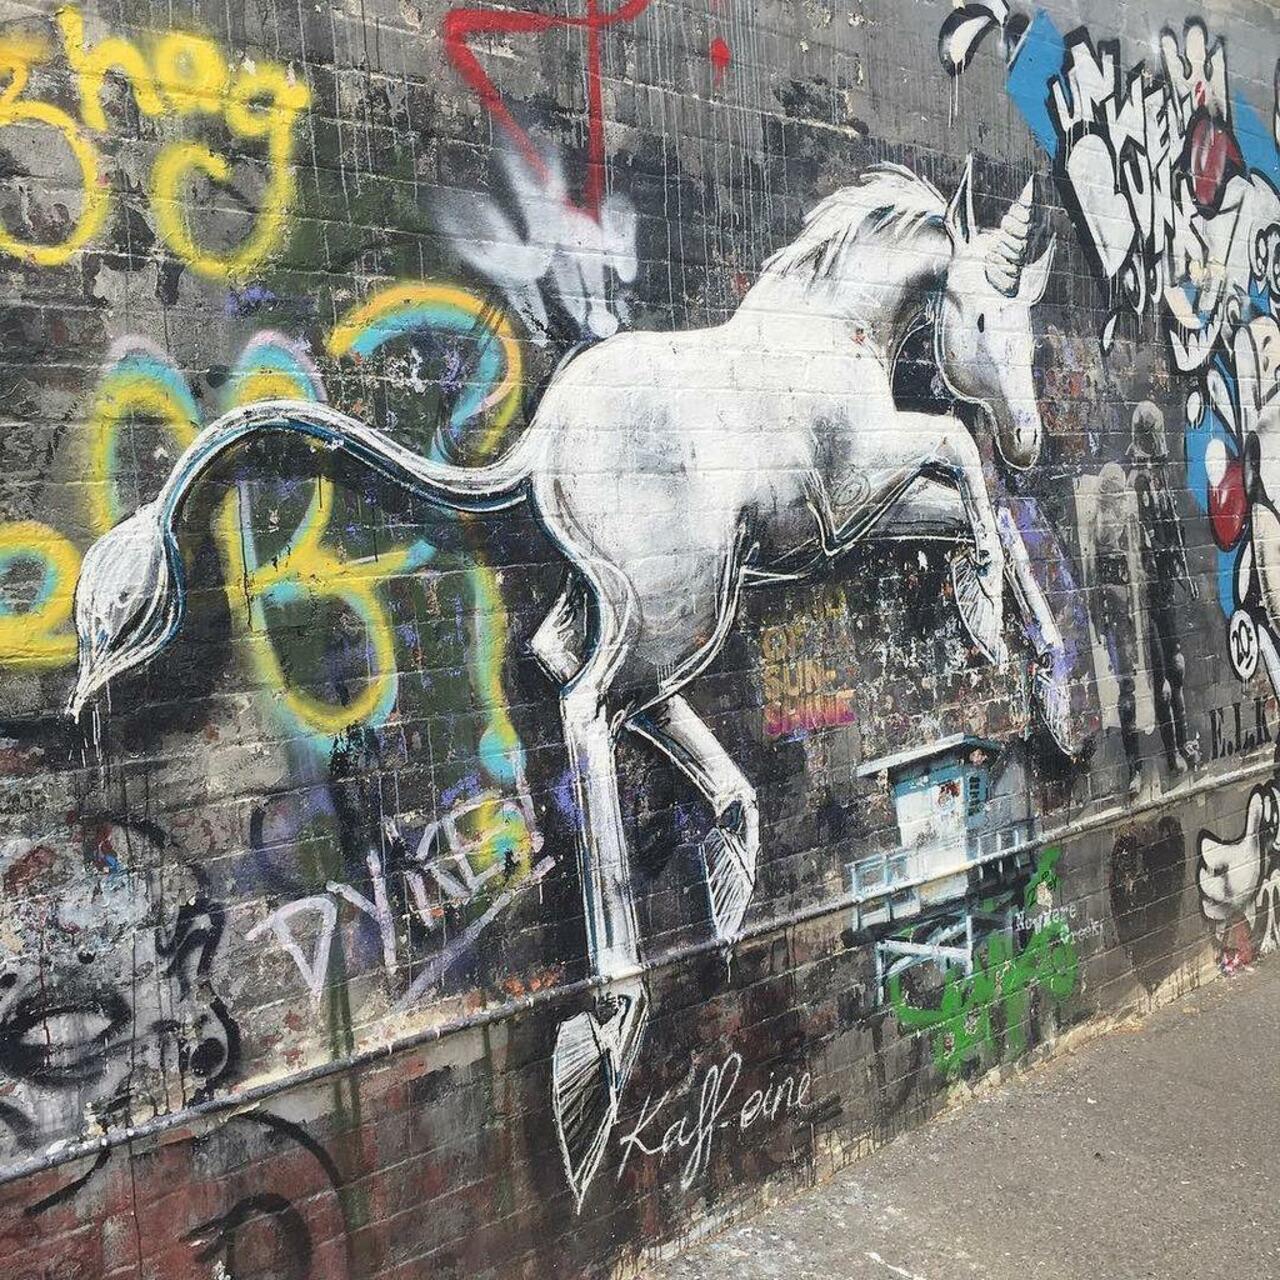 RT @artpushr: via #artie_renals "http://bit.ly/1jS2jmW" #graffiti #streetart http://t.co/8a4DPvtcho